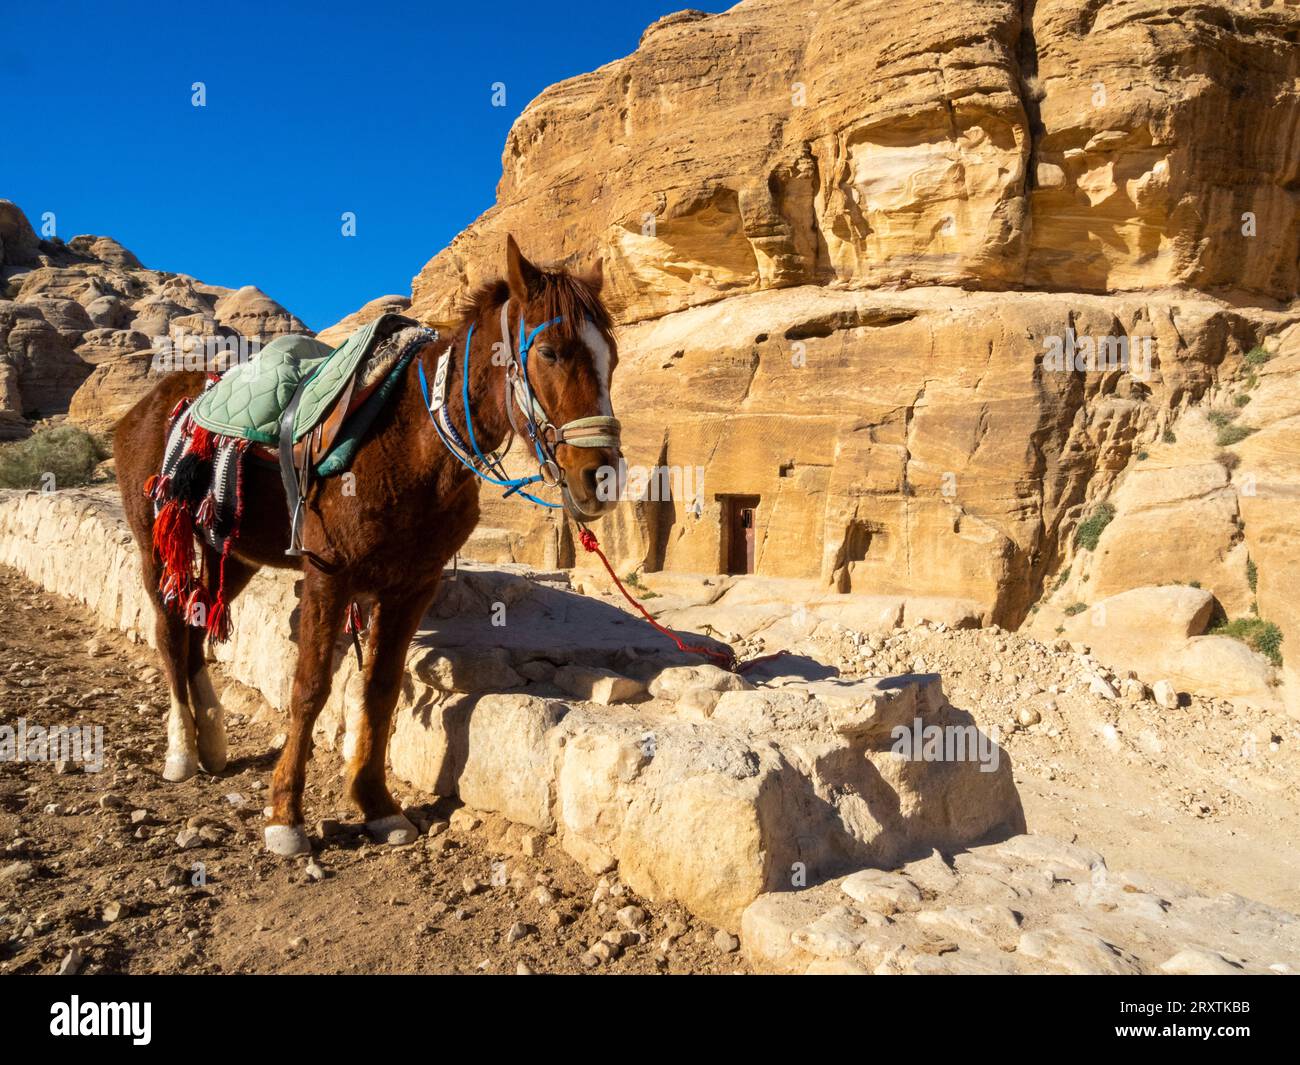 Cheval jordanien, Parc archéologique de Petra, site du patrimoine mondial de l'UNESCO, l'une des sept nouvelles merveilles du monde, Pétra, Jordanie, Moyen-Orient Banque D'Images